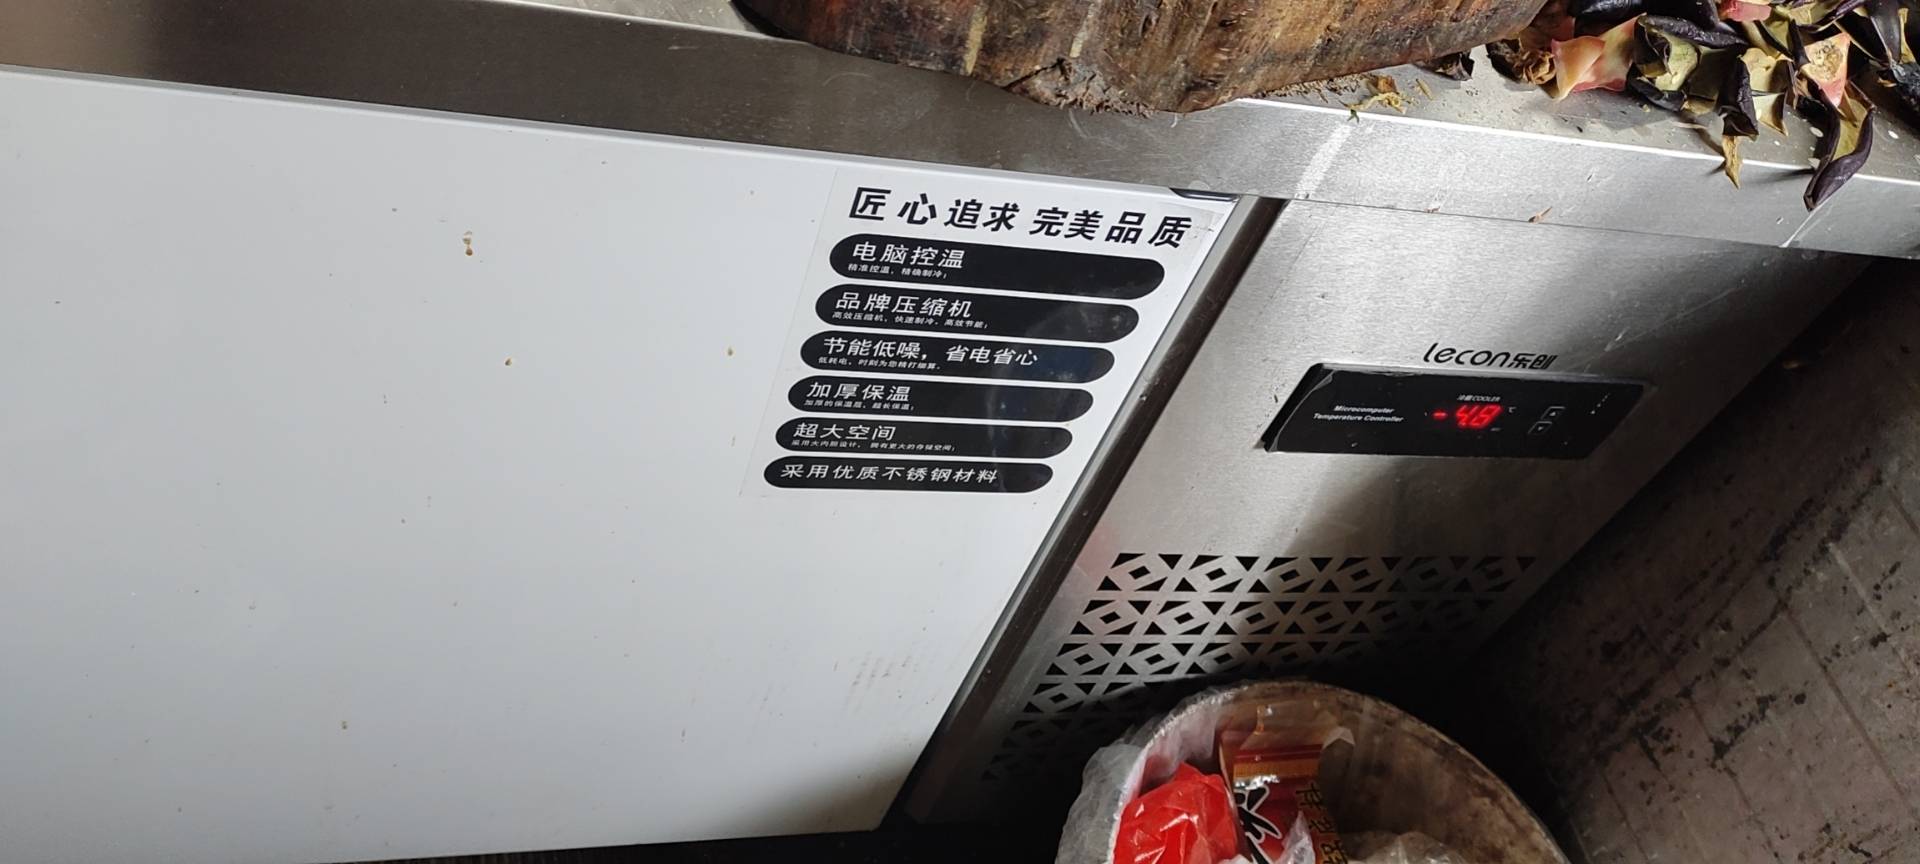 乐创(lecon)1.8米冷藏工作台乐创冷藏工作台厨房保鲜冷冻柜商用冰箱平冷冰柜水吧台奶茶店设备1.8*0.8*0.8米晒单图